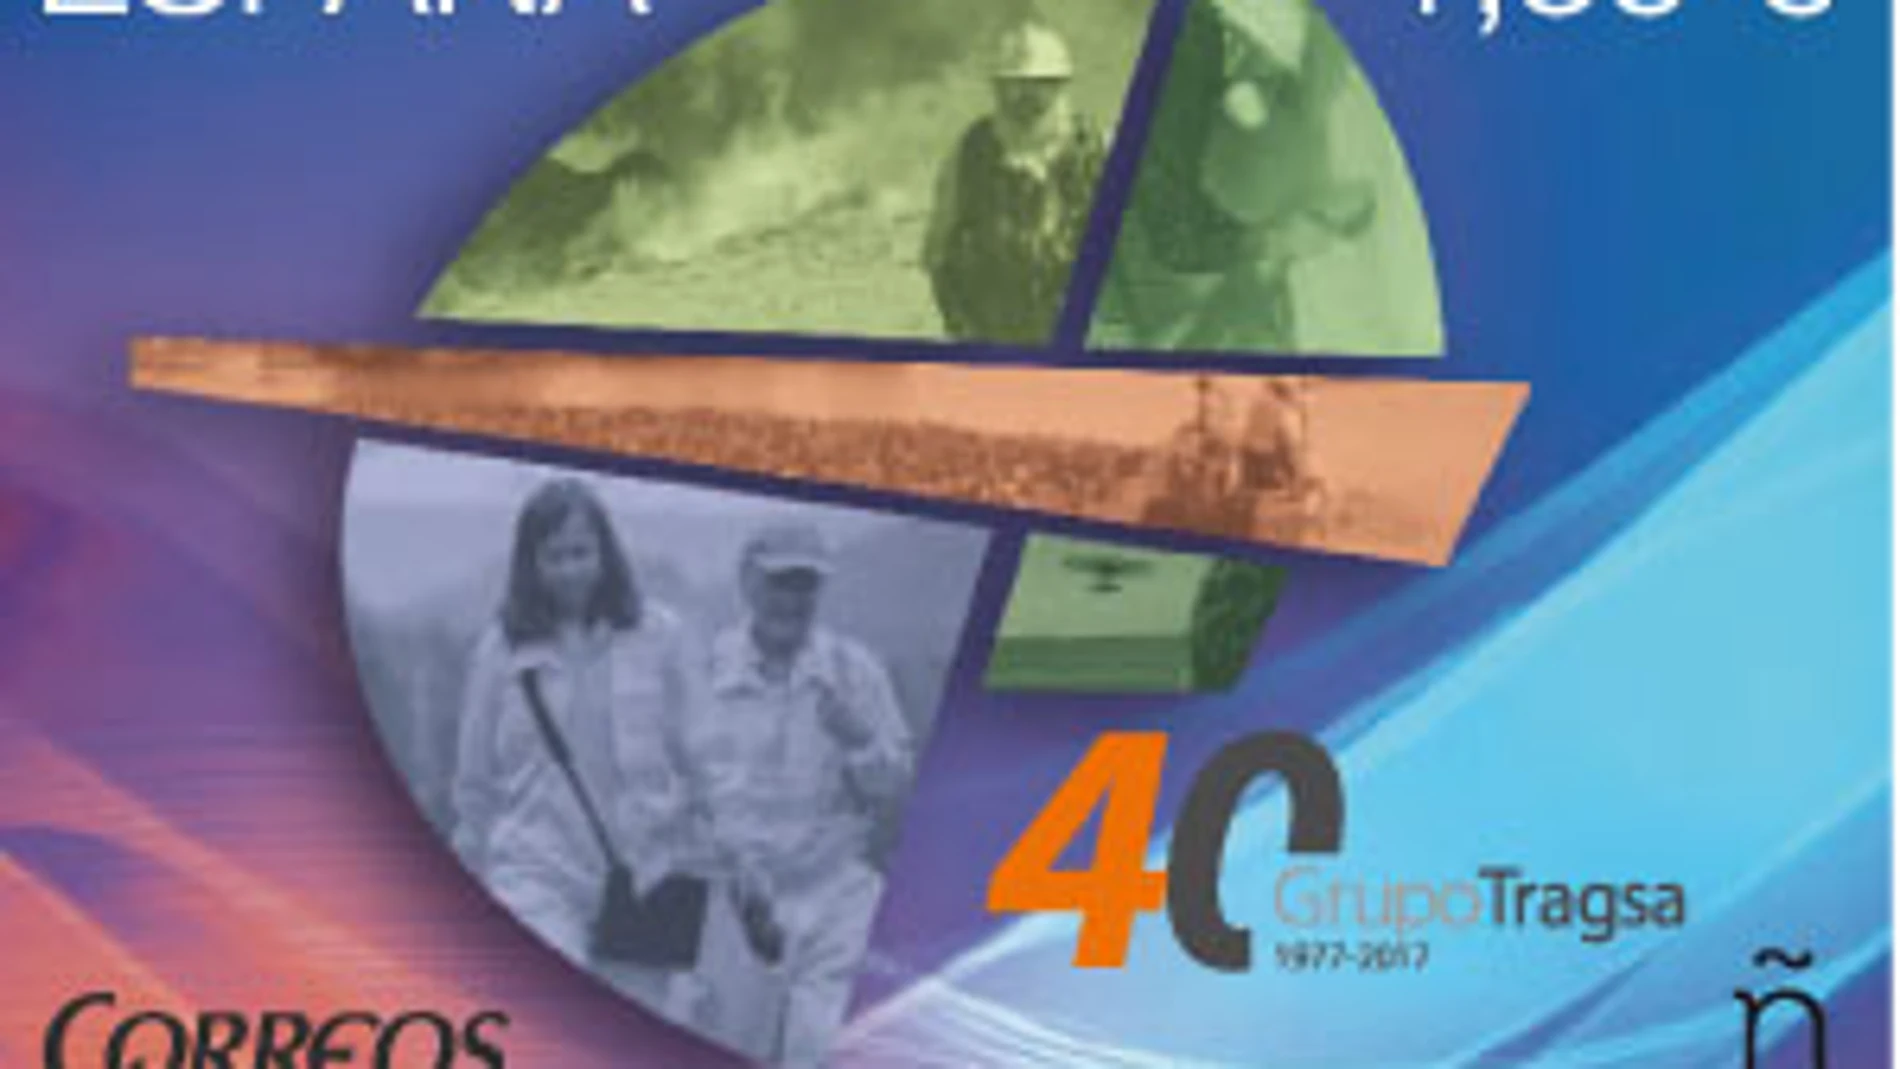 Correos presenta un sello que conmemora el 40 aniversario del Grupo Tragsa